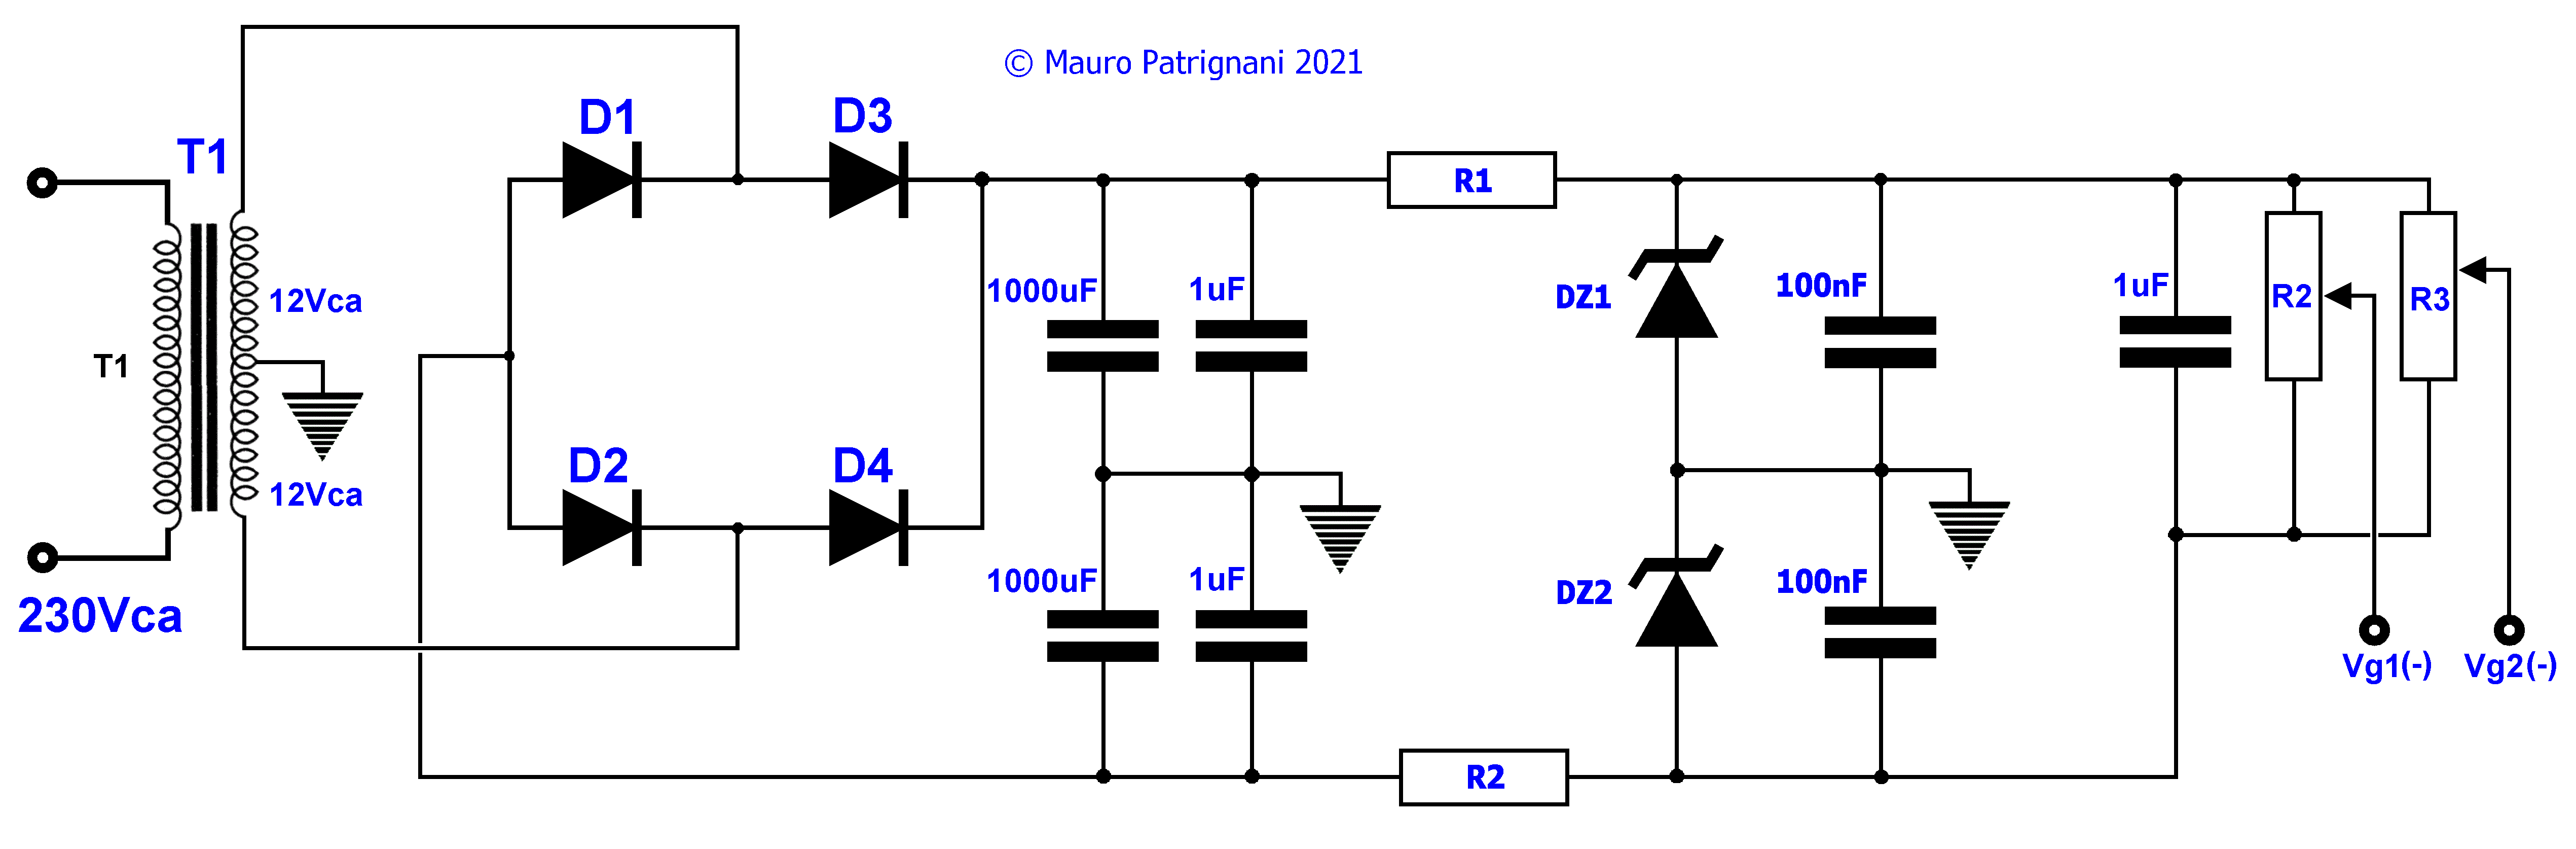 Circuito di alimentazione duale per griglia di controllo valvole termoioniche.